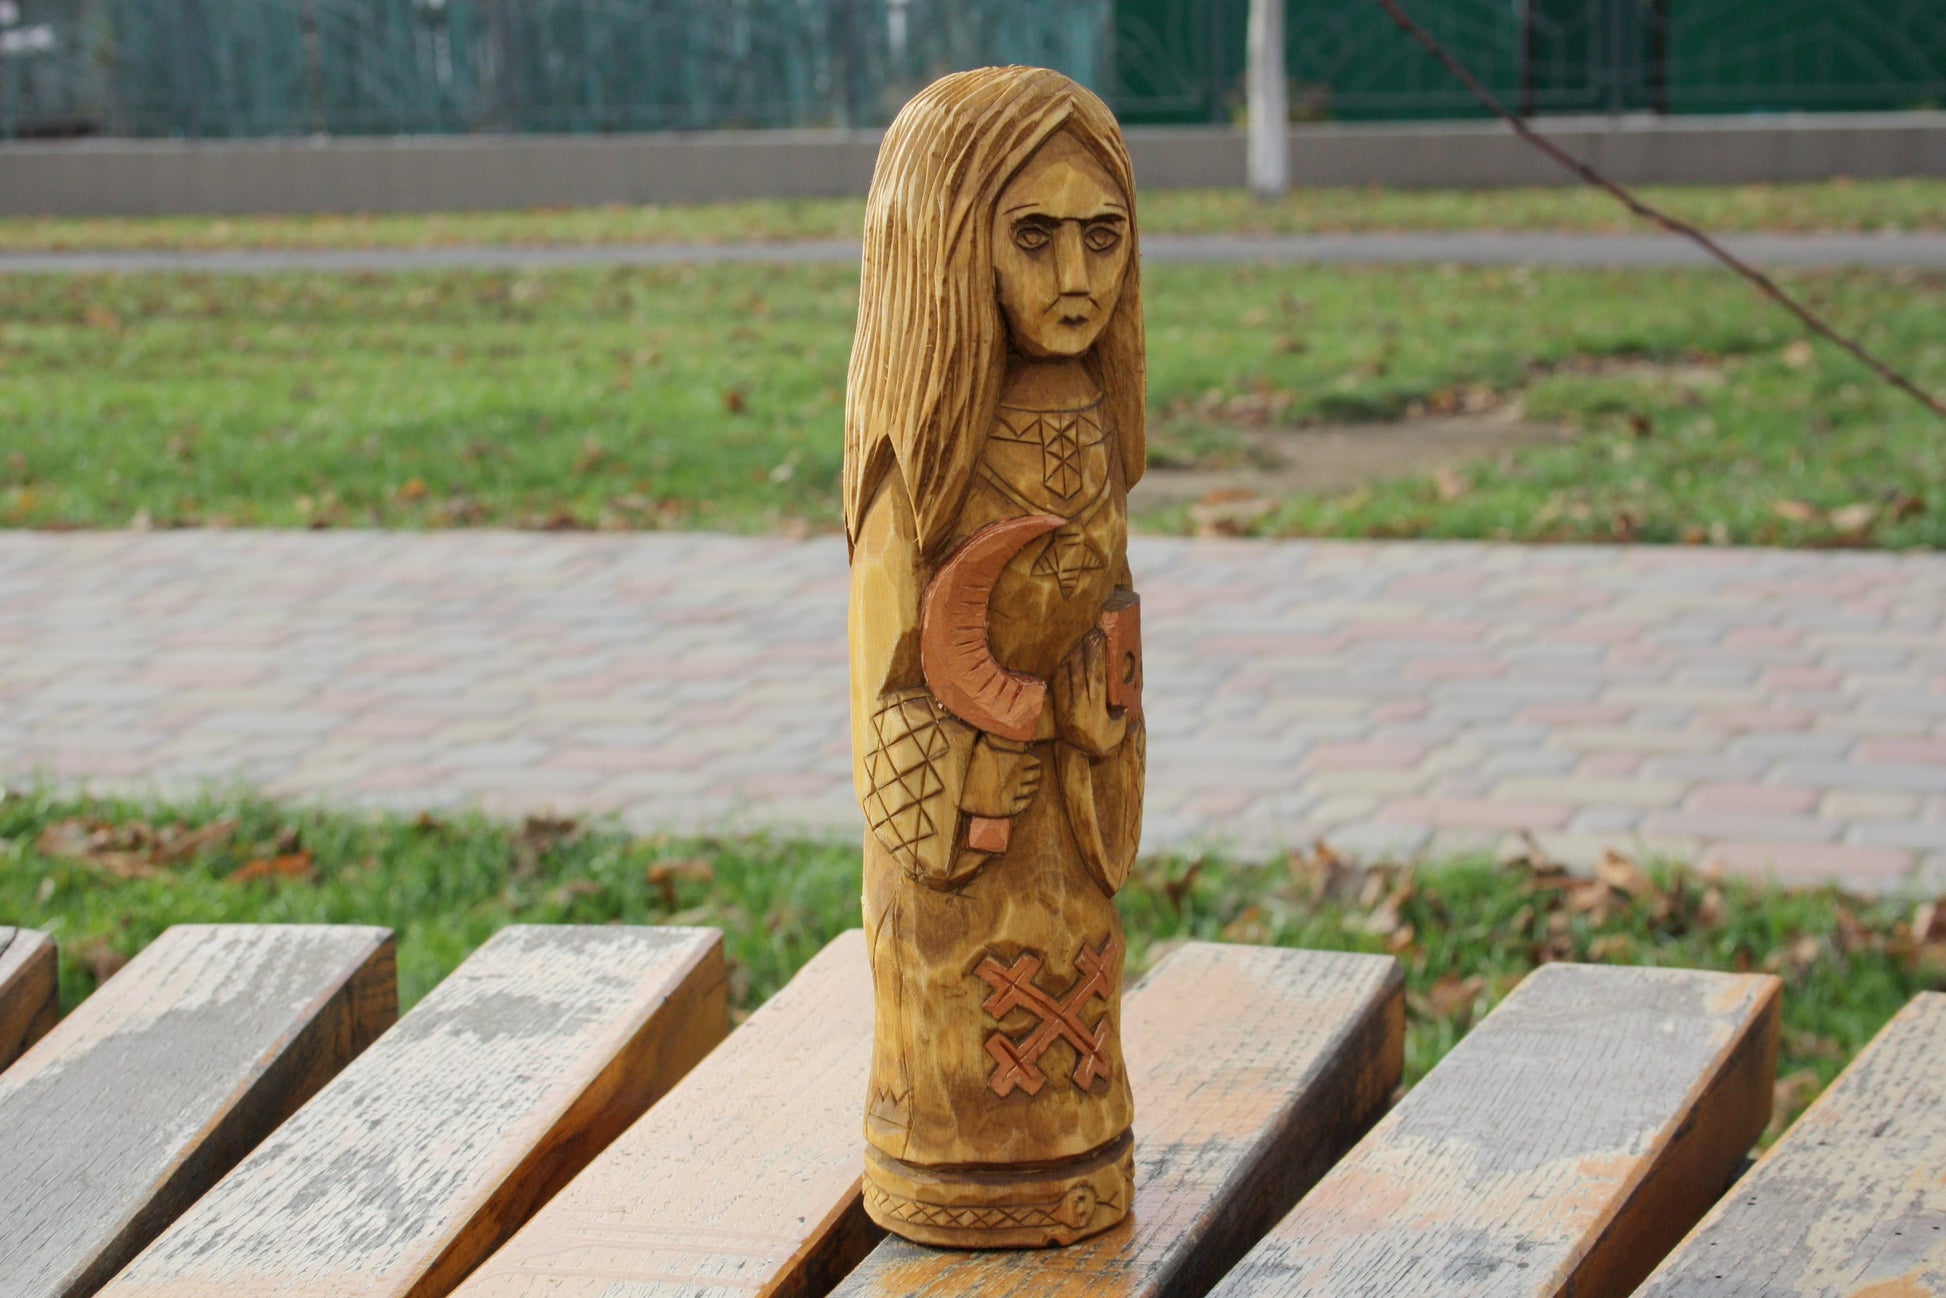 Big statue of Slavic Goddess Morana